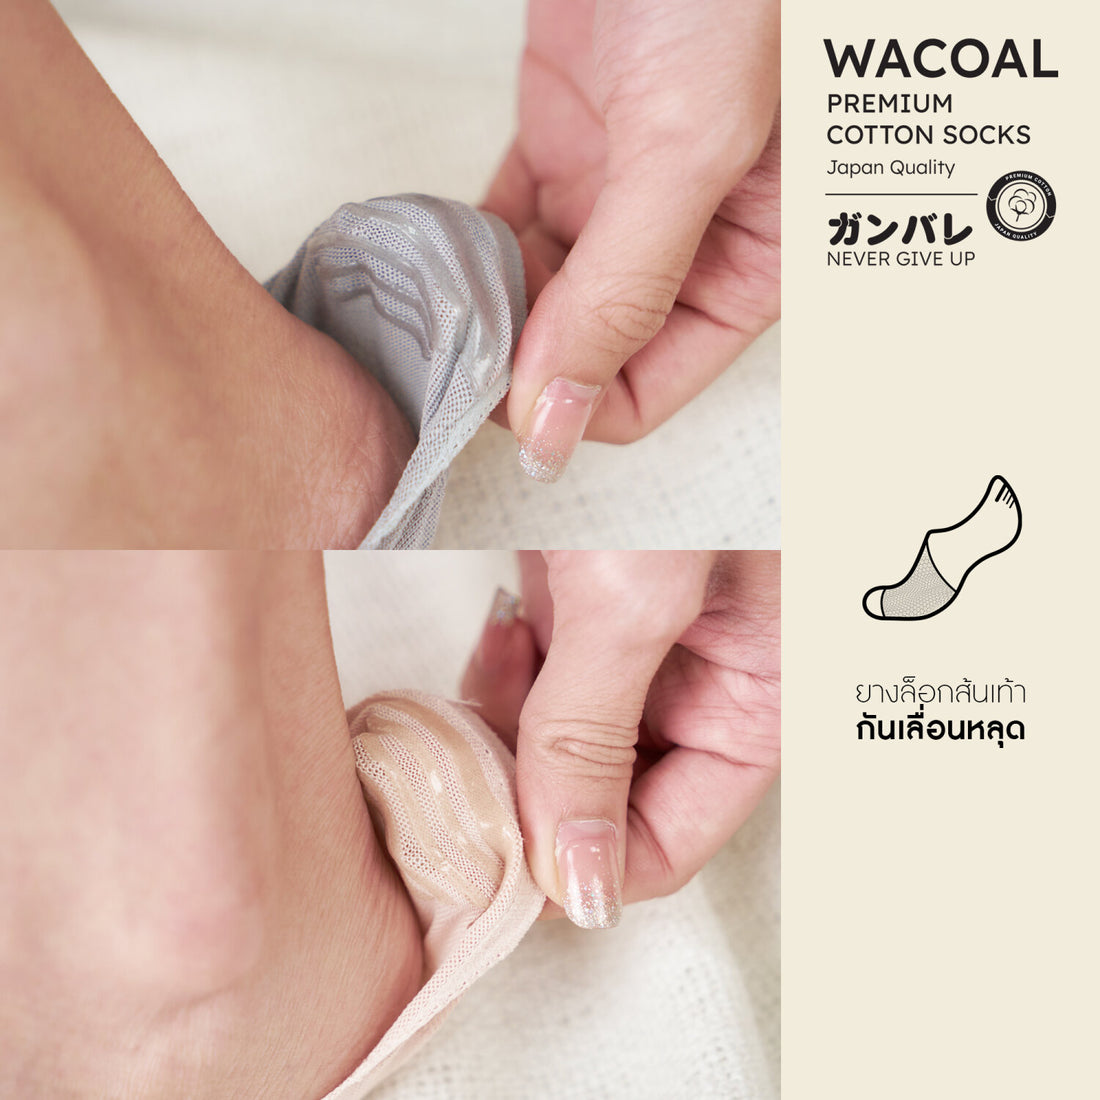 ถุงเท้าซ่อนข้อ ถุงเท้าข้อเว้า Premium Cotton Socks Selected by Wacoal Set 3 pcs รุ่น WW110400 สีเทา (LI)